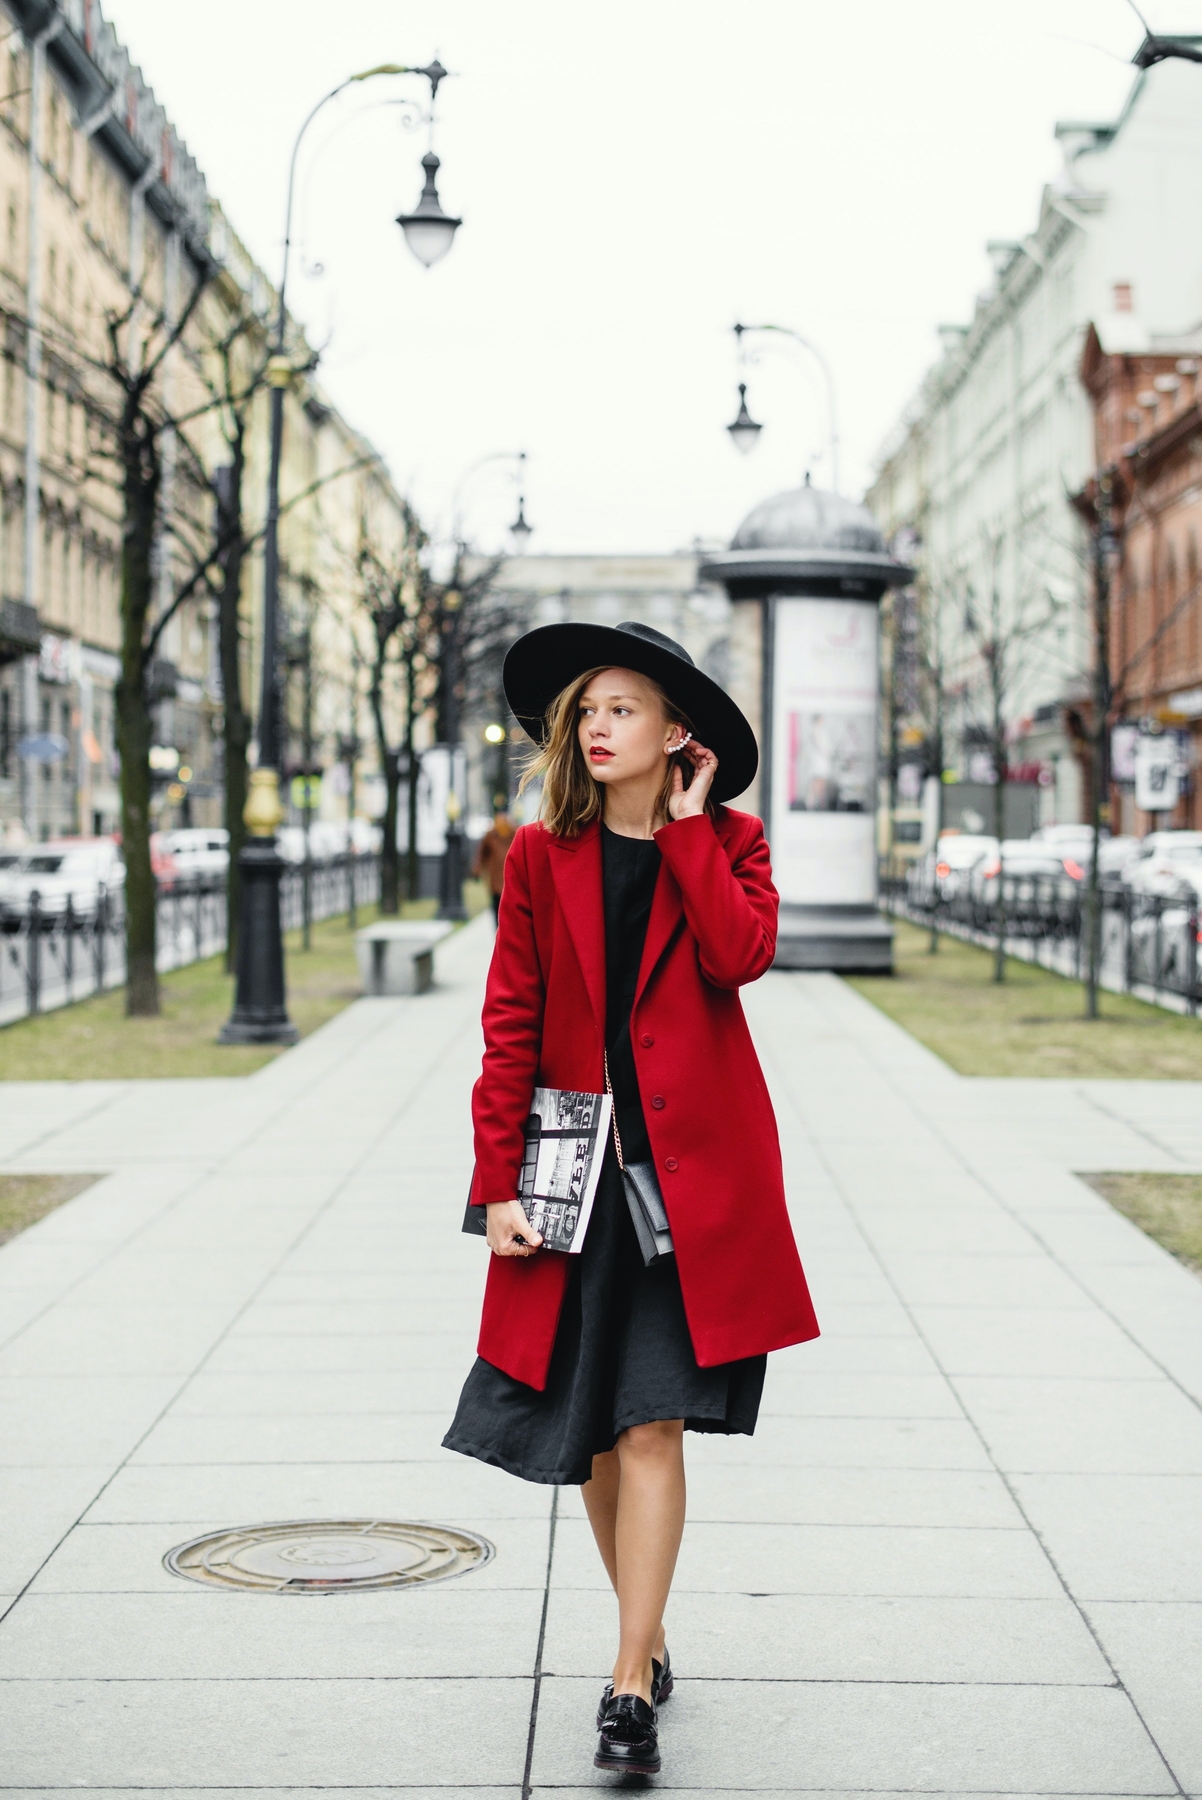 slečna vo výraznom červenom kabáte a čiernom klobúku